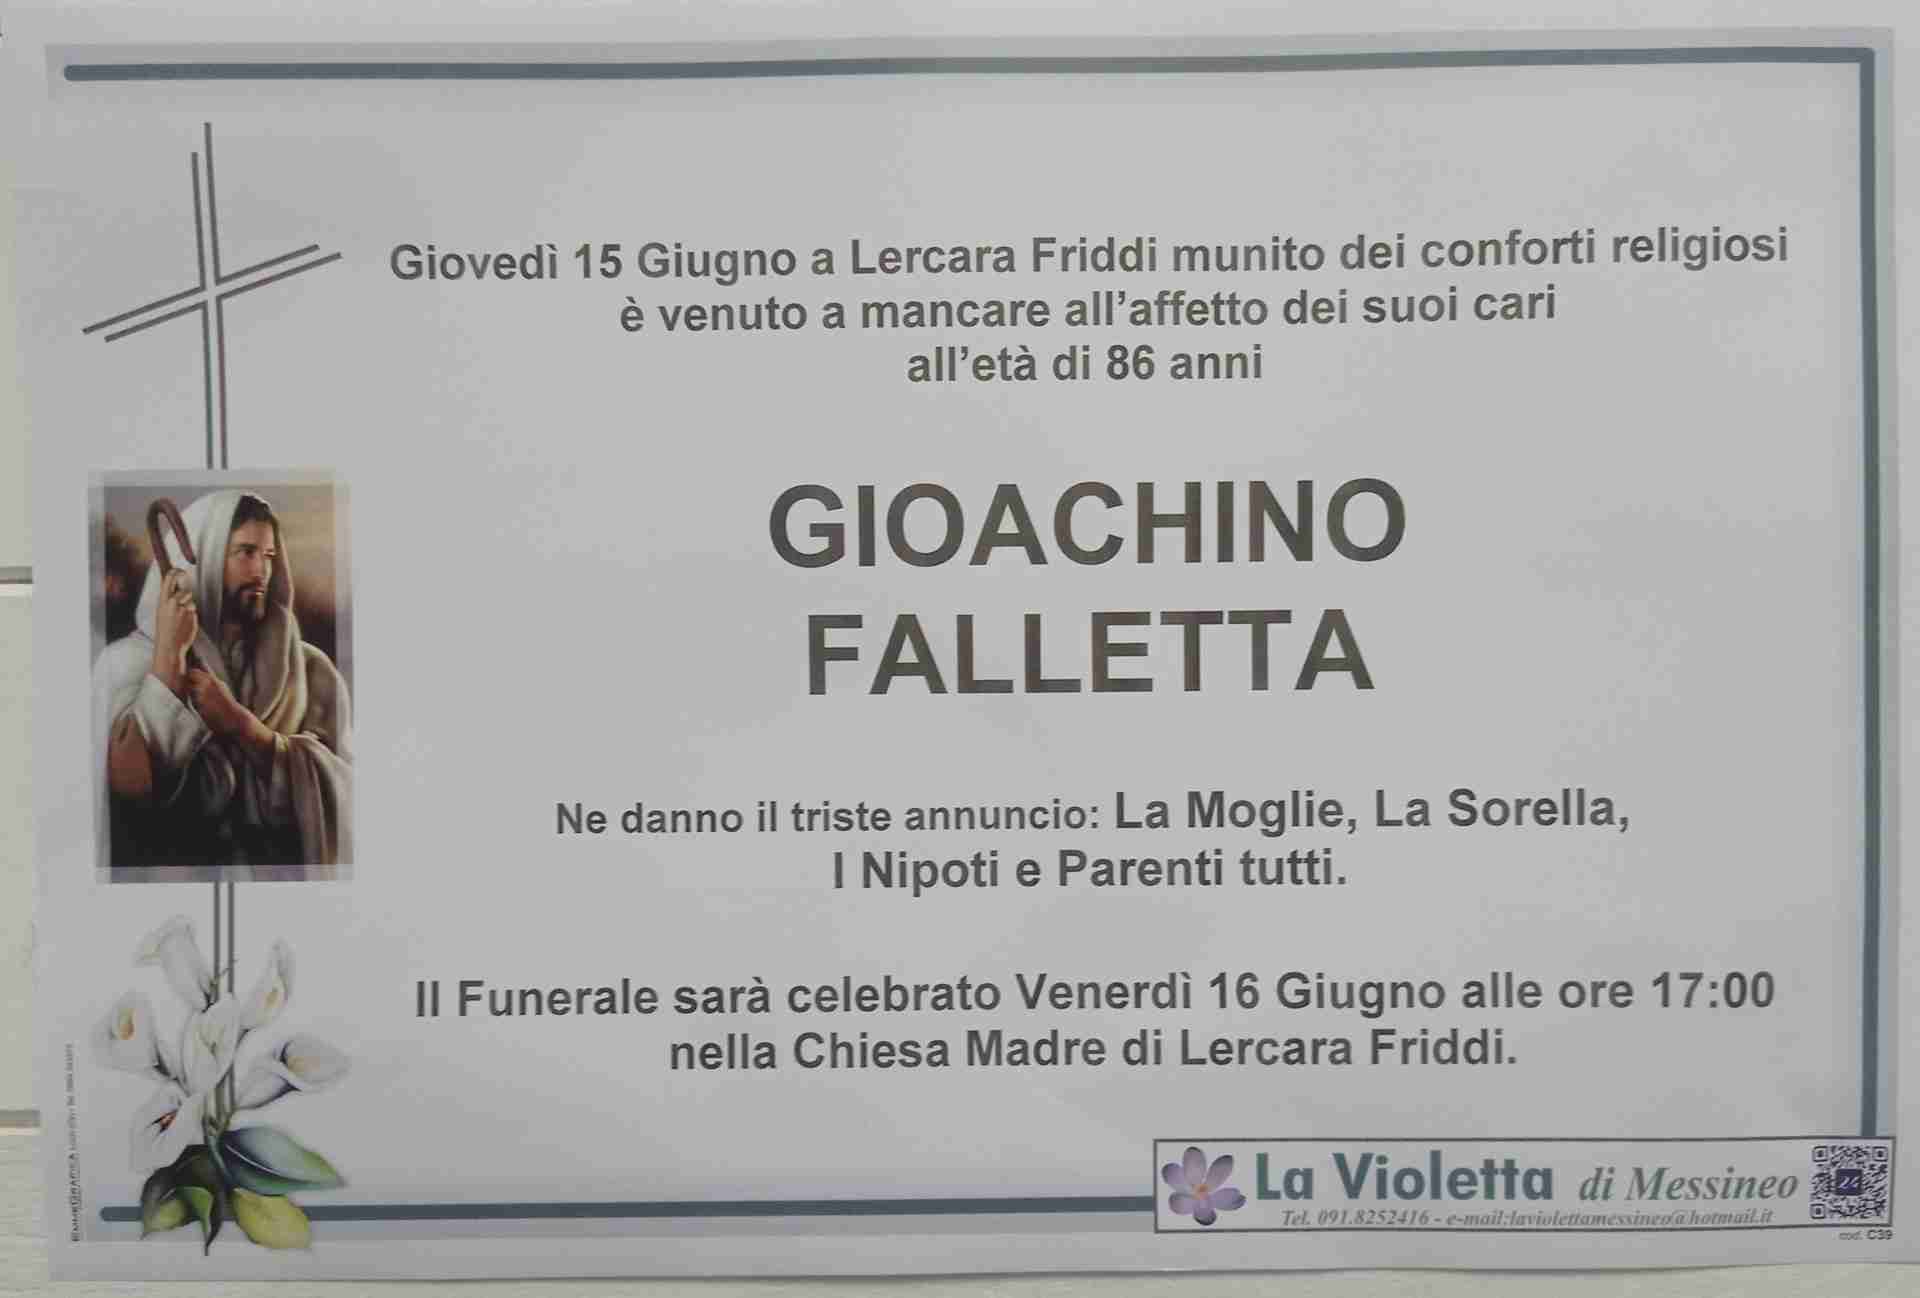 Gioachino Falletta